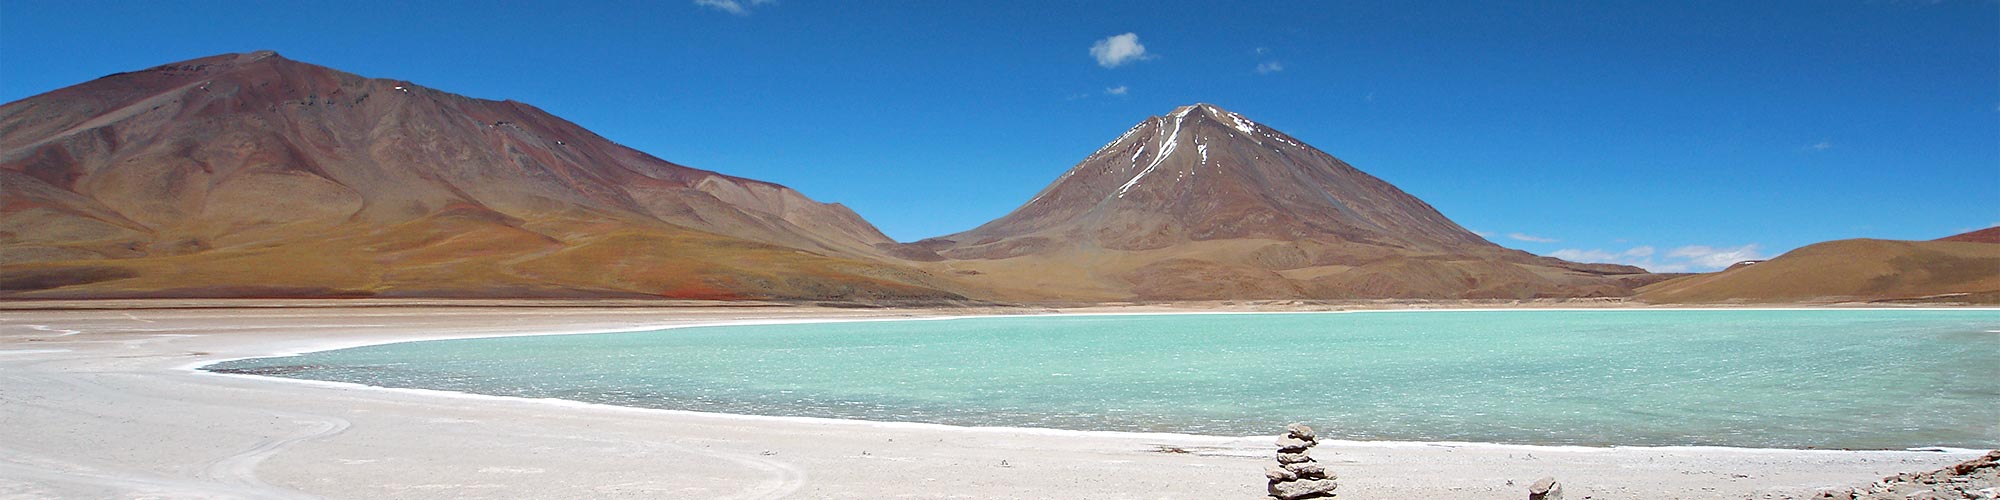 Chile/Bolivien Trekking